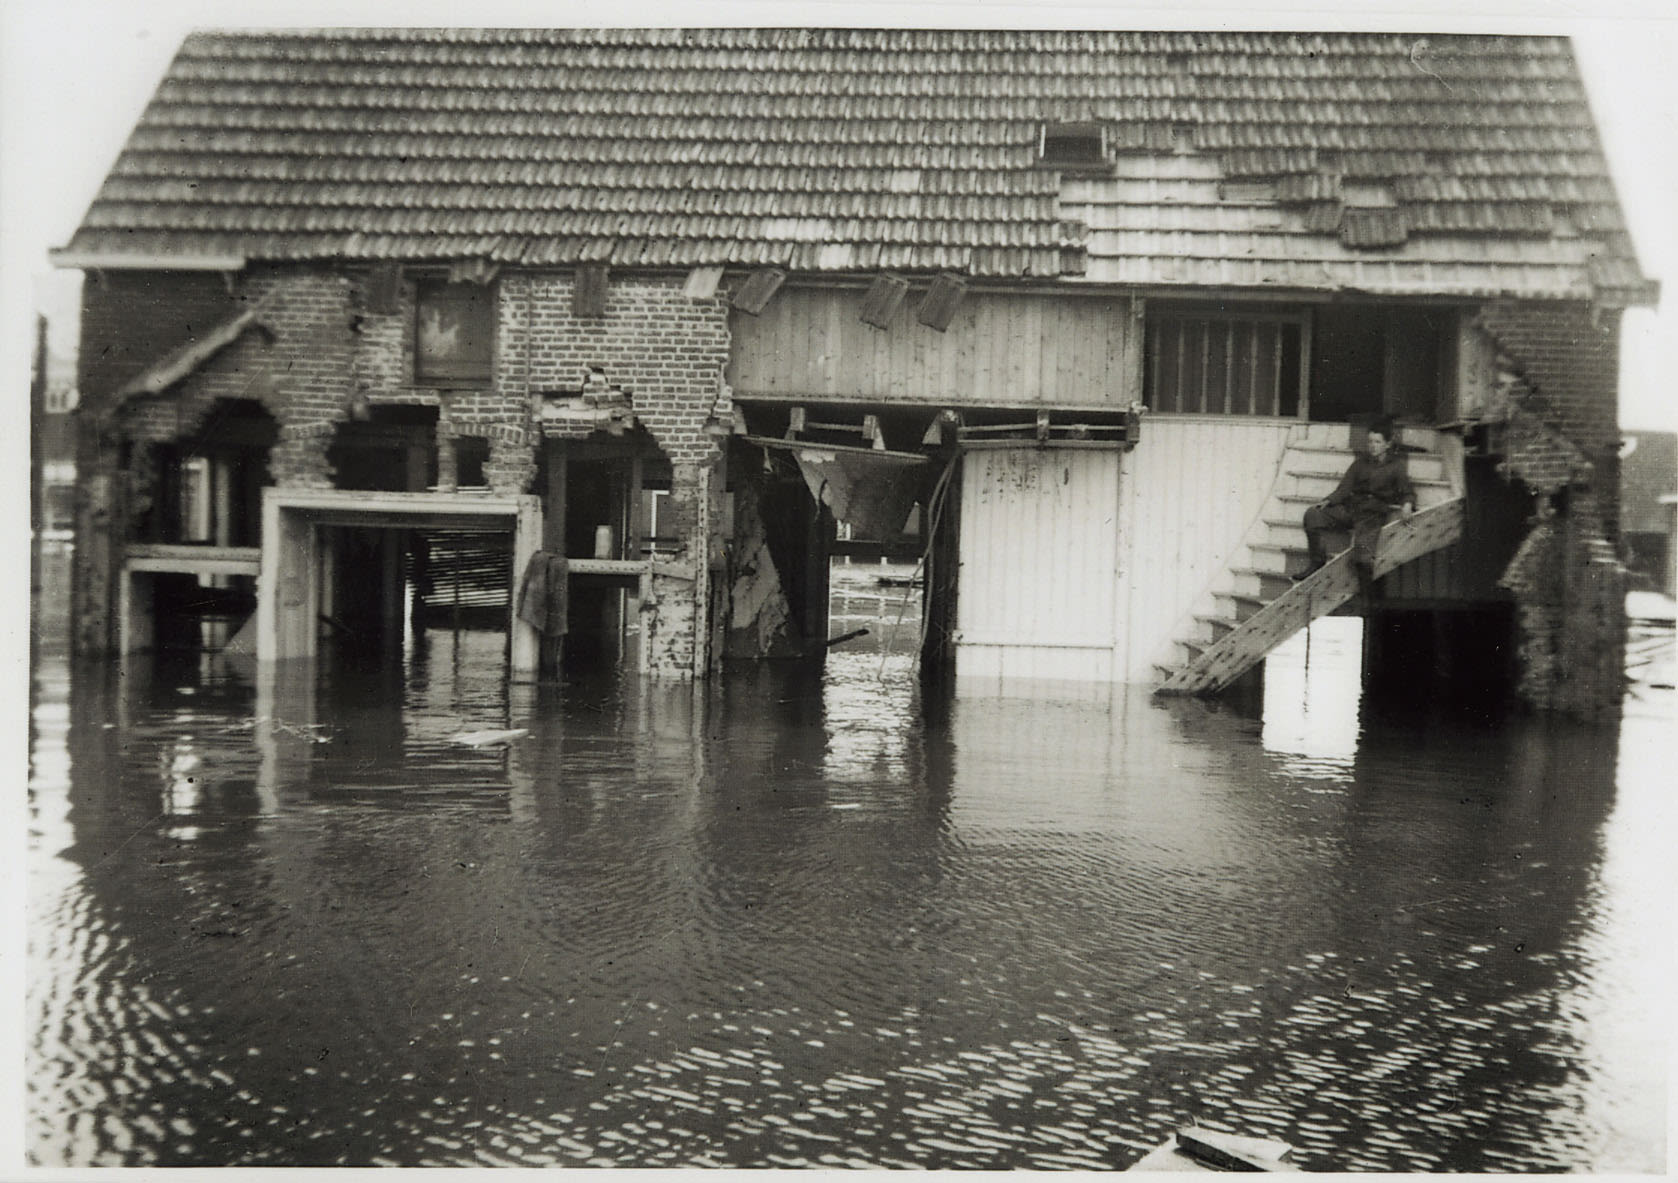 Verwoest huis in Nieuwerkerk tijdens de watersnoodramp 1953. Bron: Zeeuws Archief, Beeldbank Schouwen-Duiveland, nr X-3270